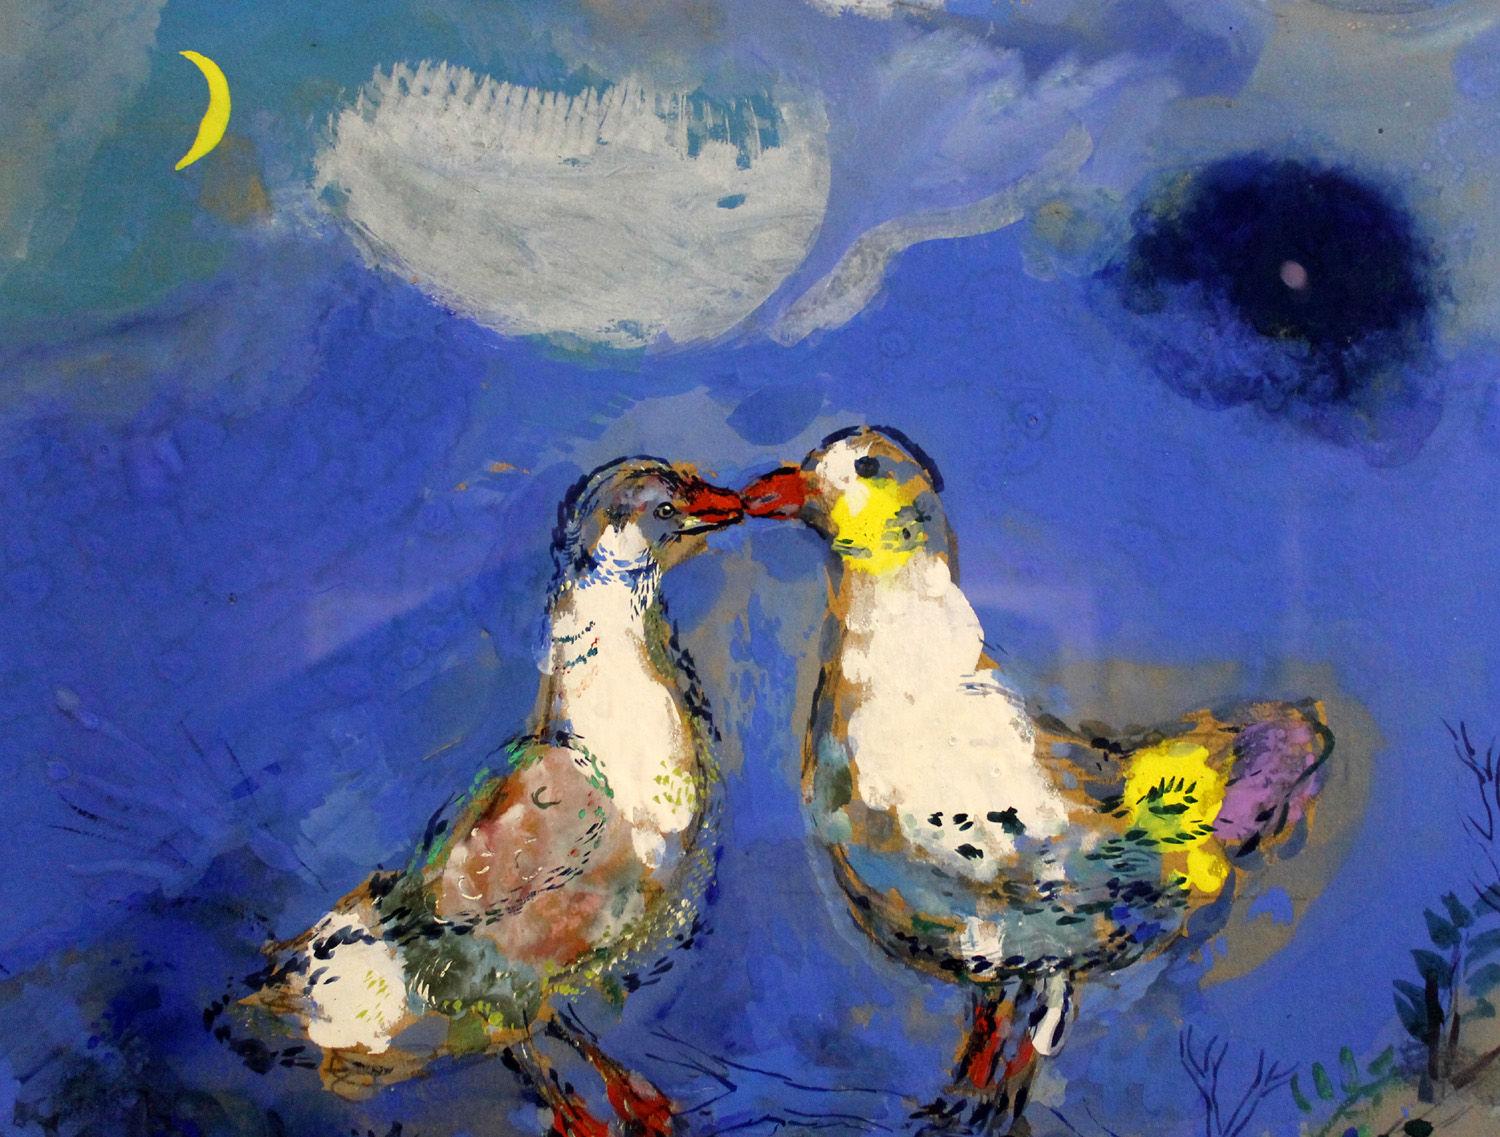 Risultati immagini per marc chagall opere